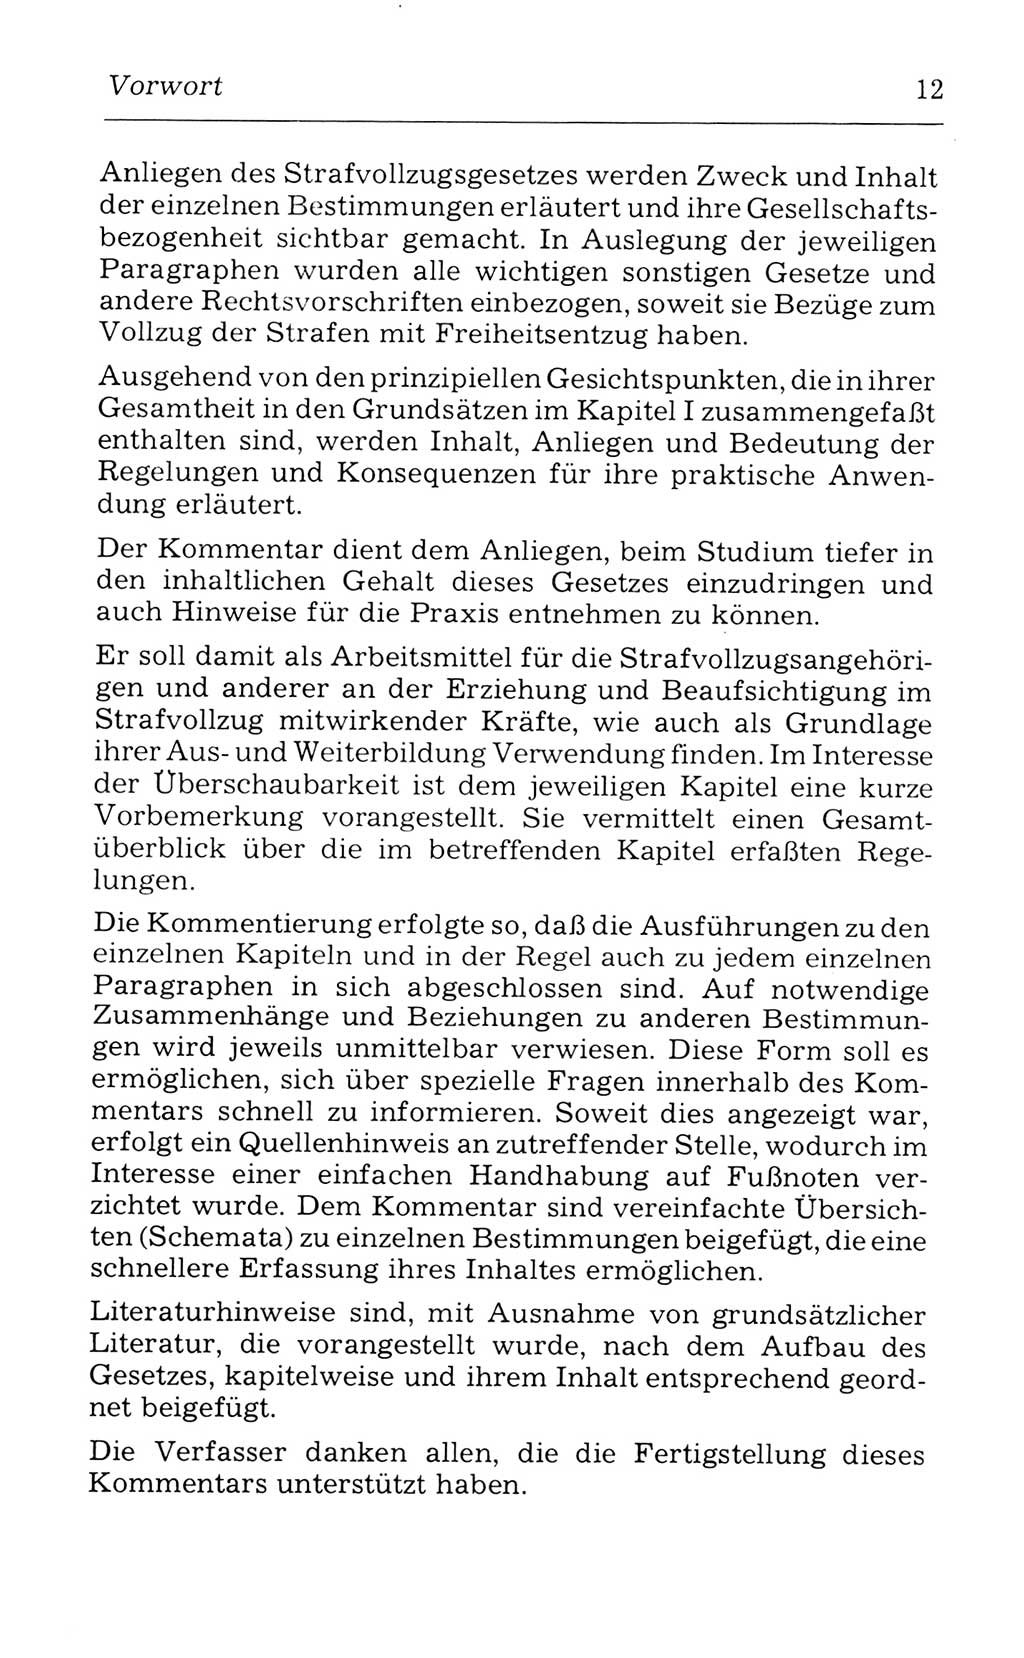 Kommentar zum Strafvollzugsgesetz [(StVG) Deutsche Demokratische Republik (DDR)] 1980, Seite 12 (Komm. StVG DDR 1980, S. 12)